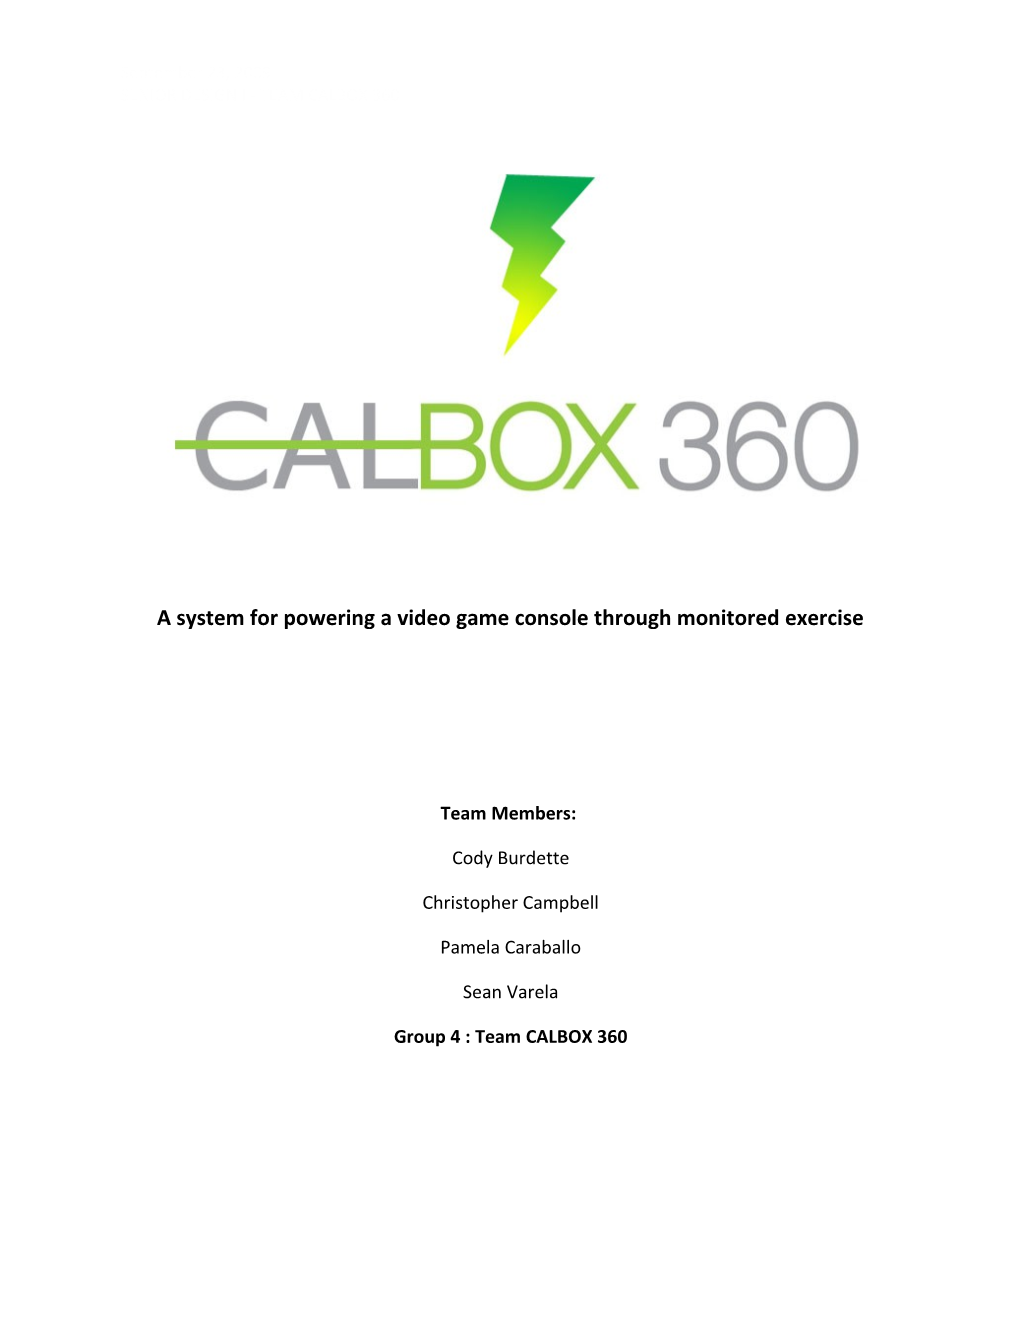 Senior Design I - Team CALBOX 360